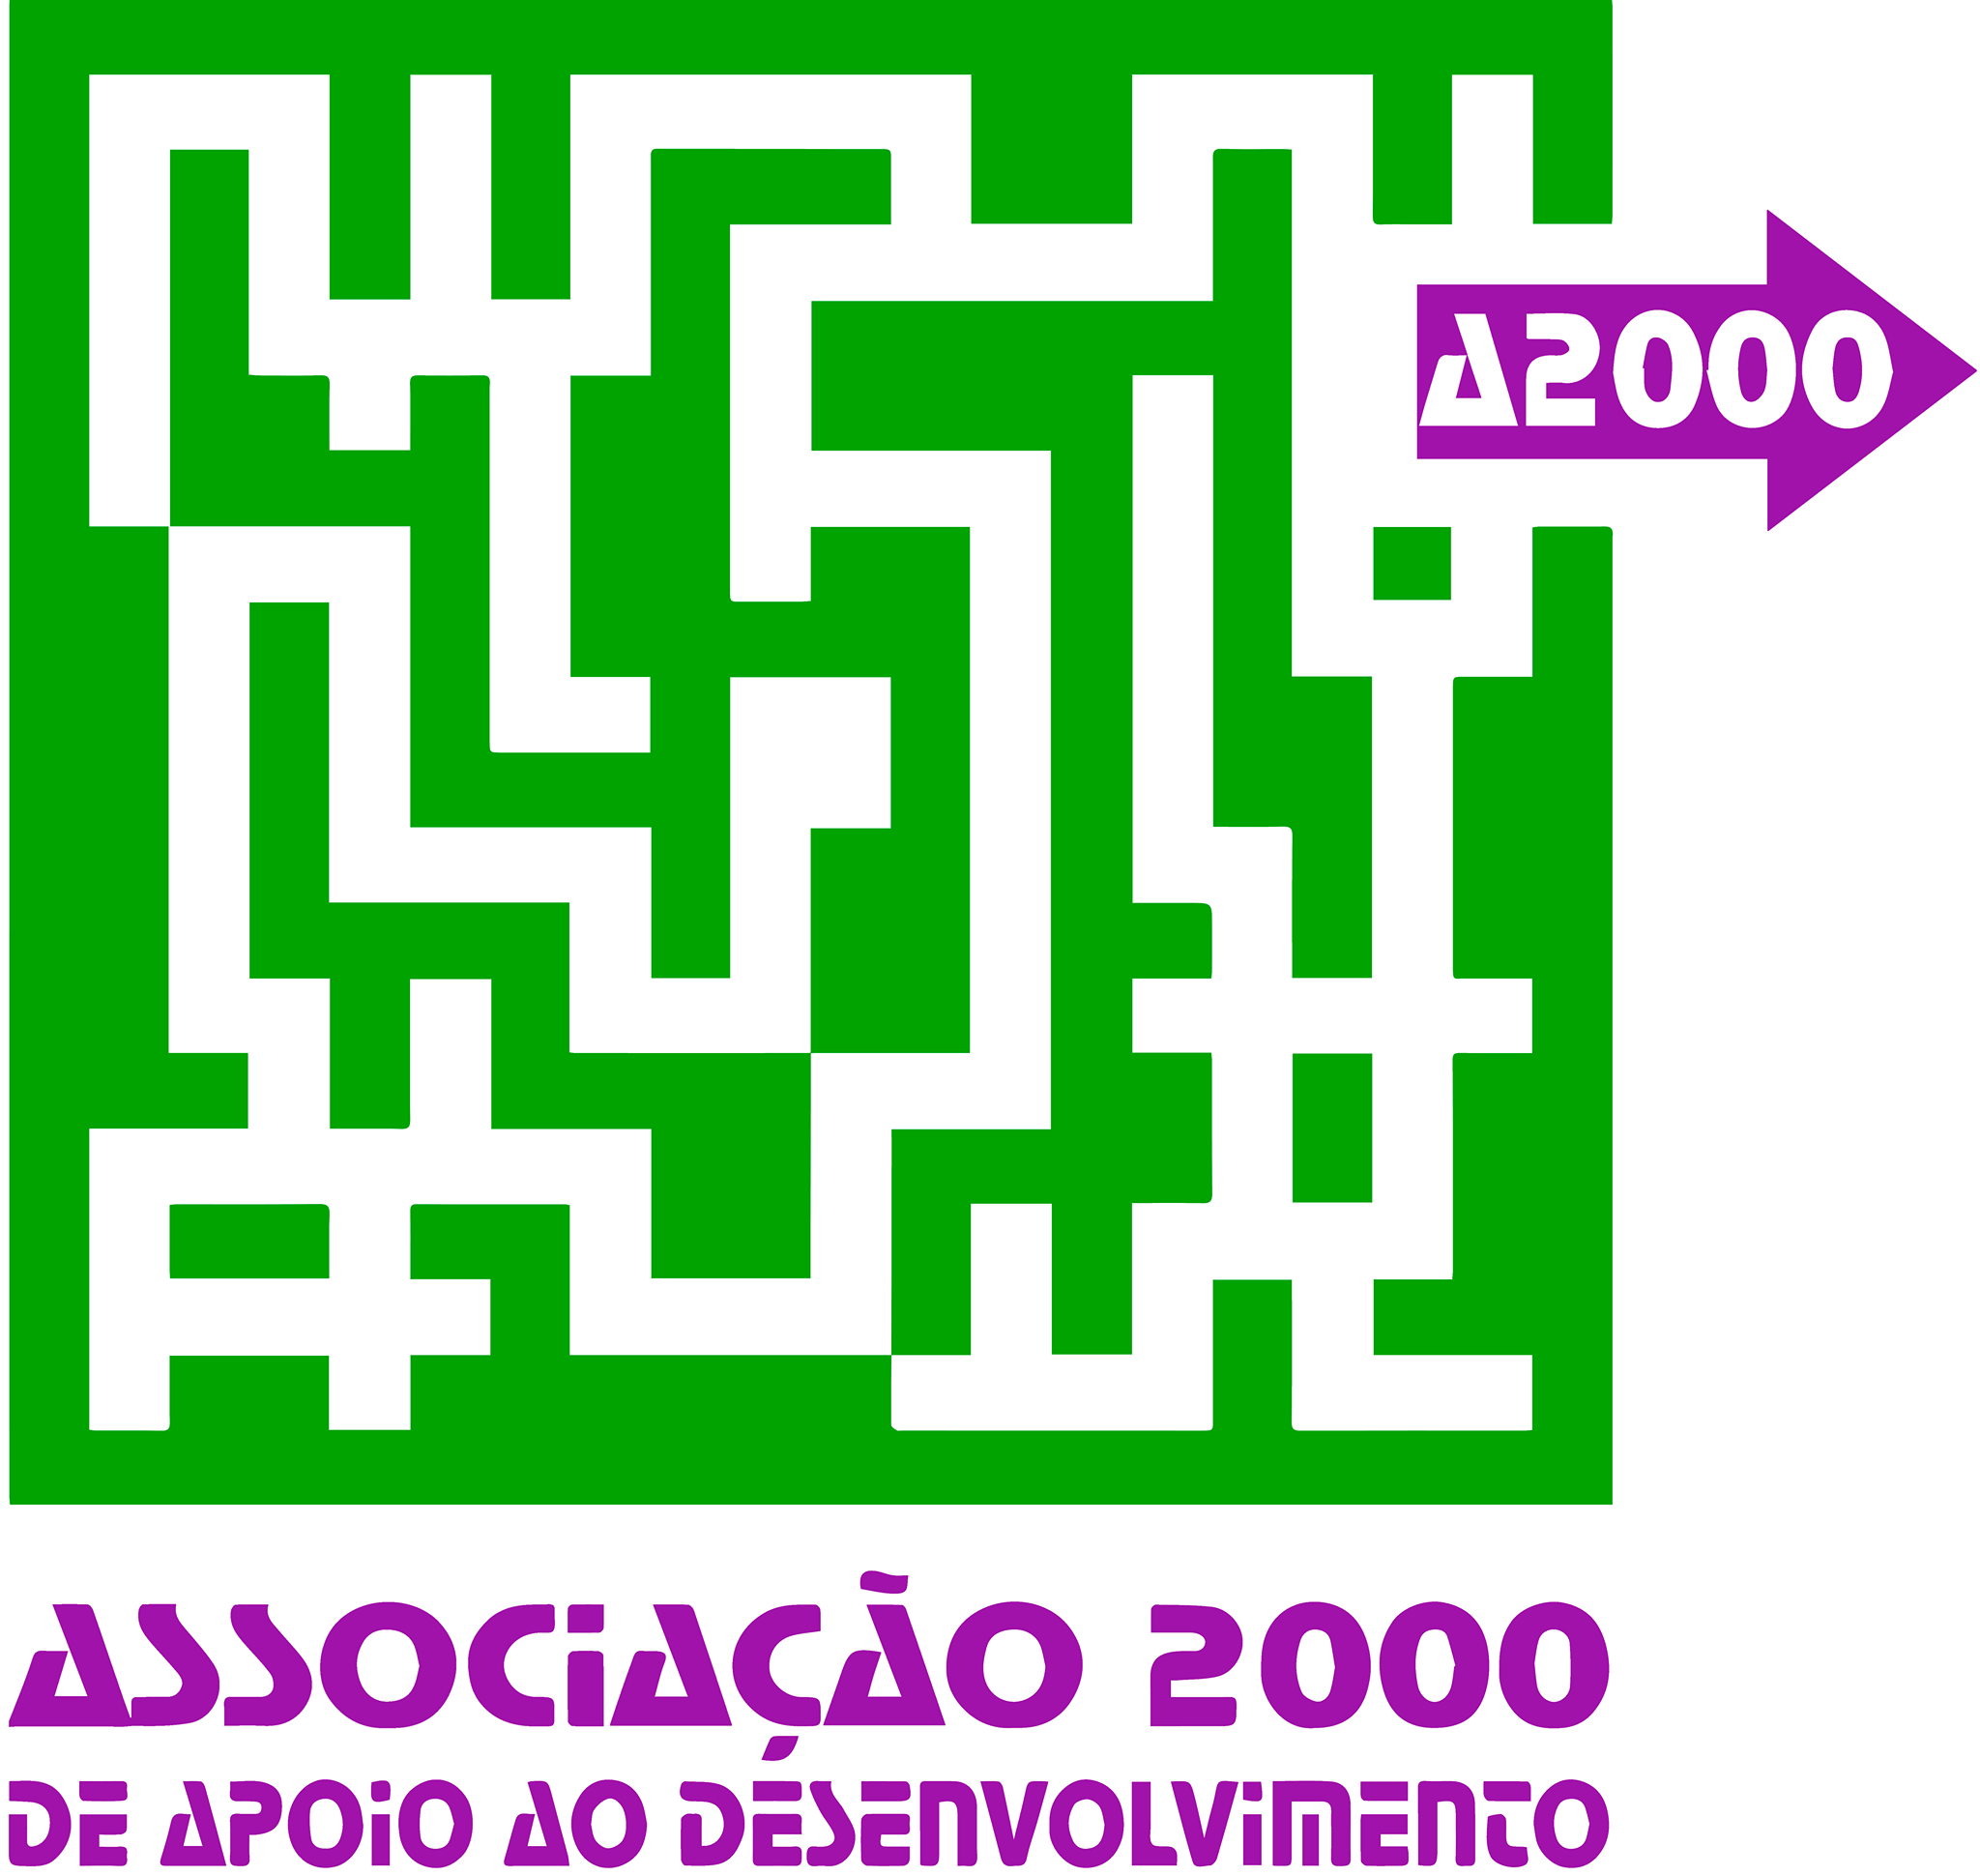 Associação 2000 de Apoio Ao Desenvolvimento - A2000